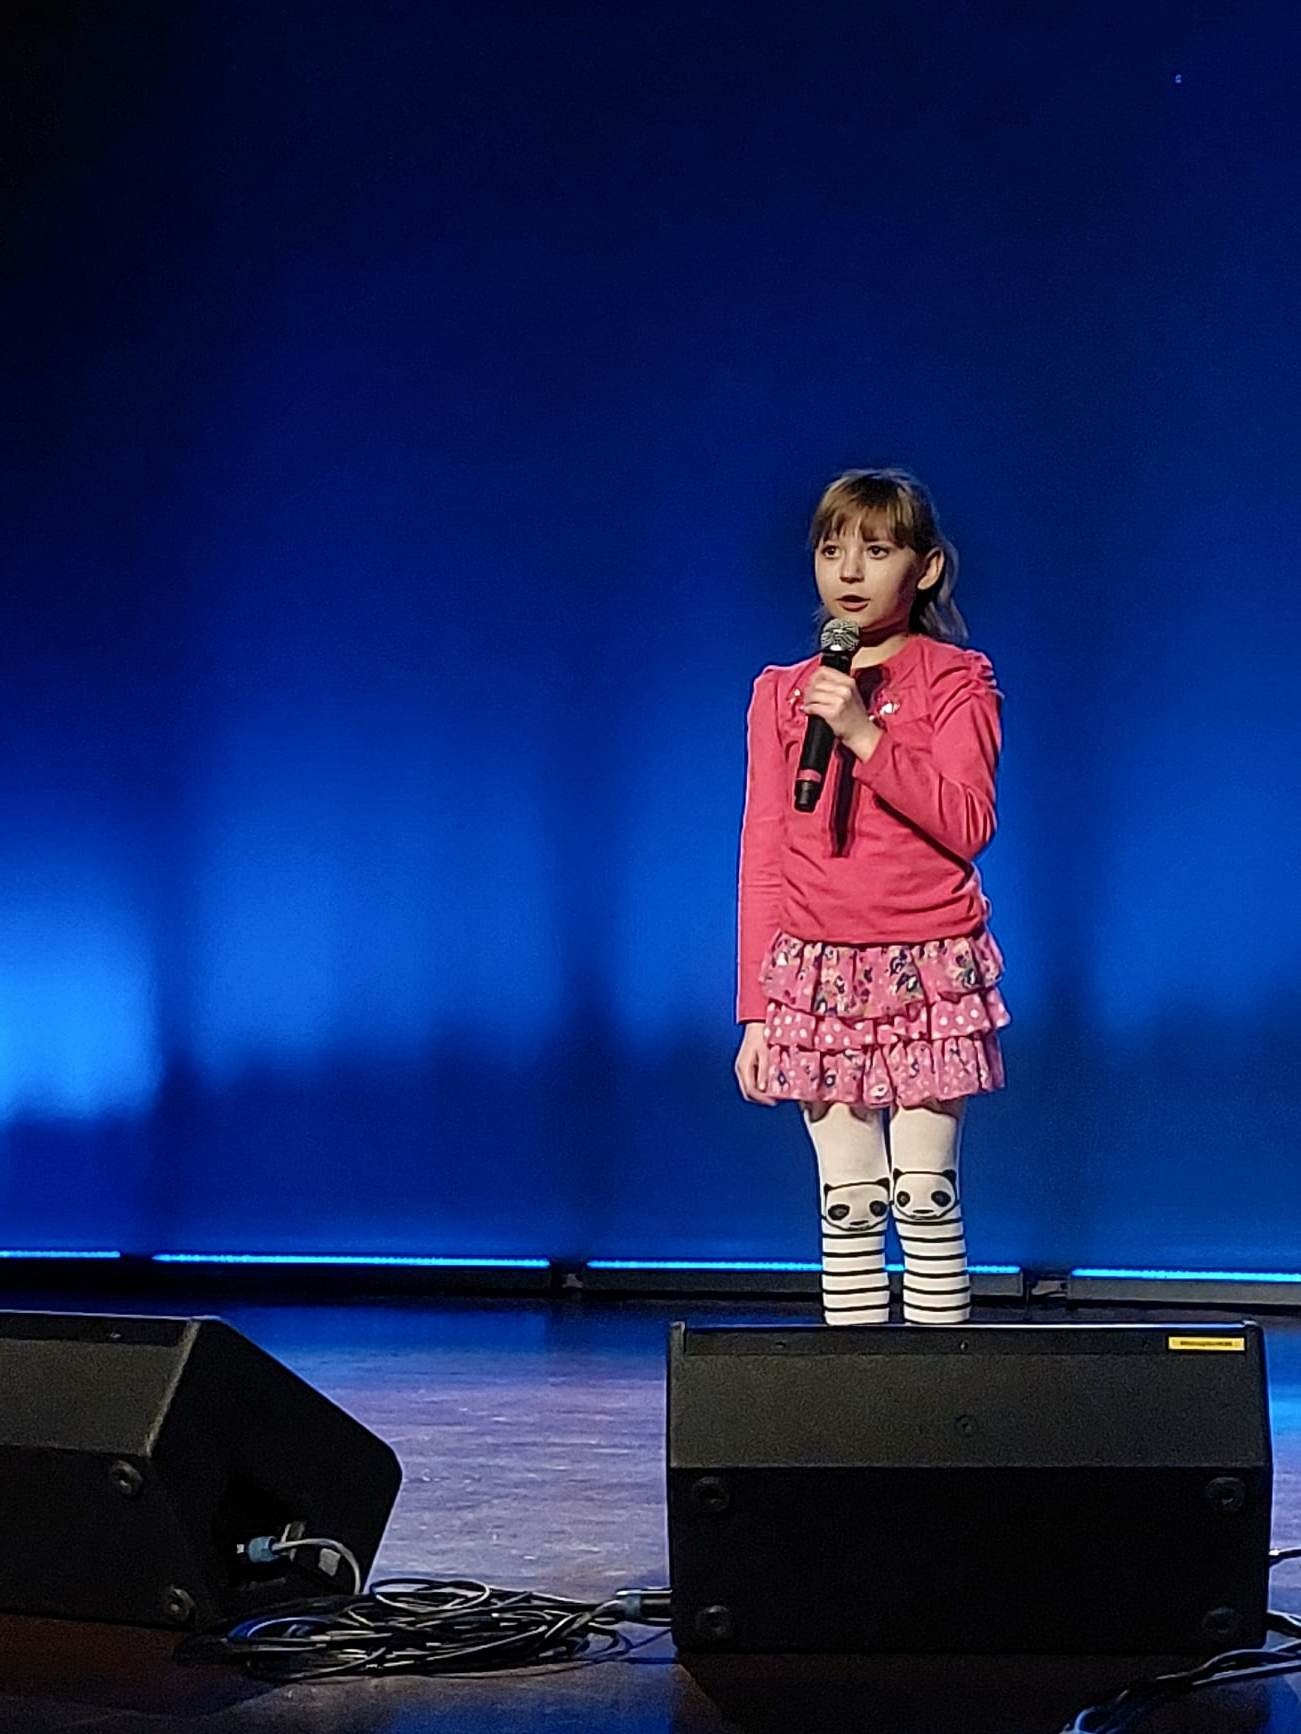 Dziewczynka z mikrofonem w ręku na scenie śpiewa piosenkę